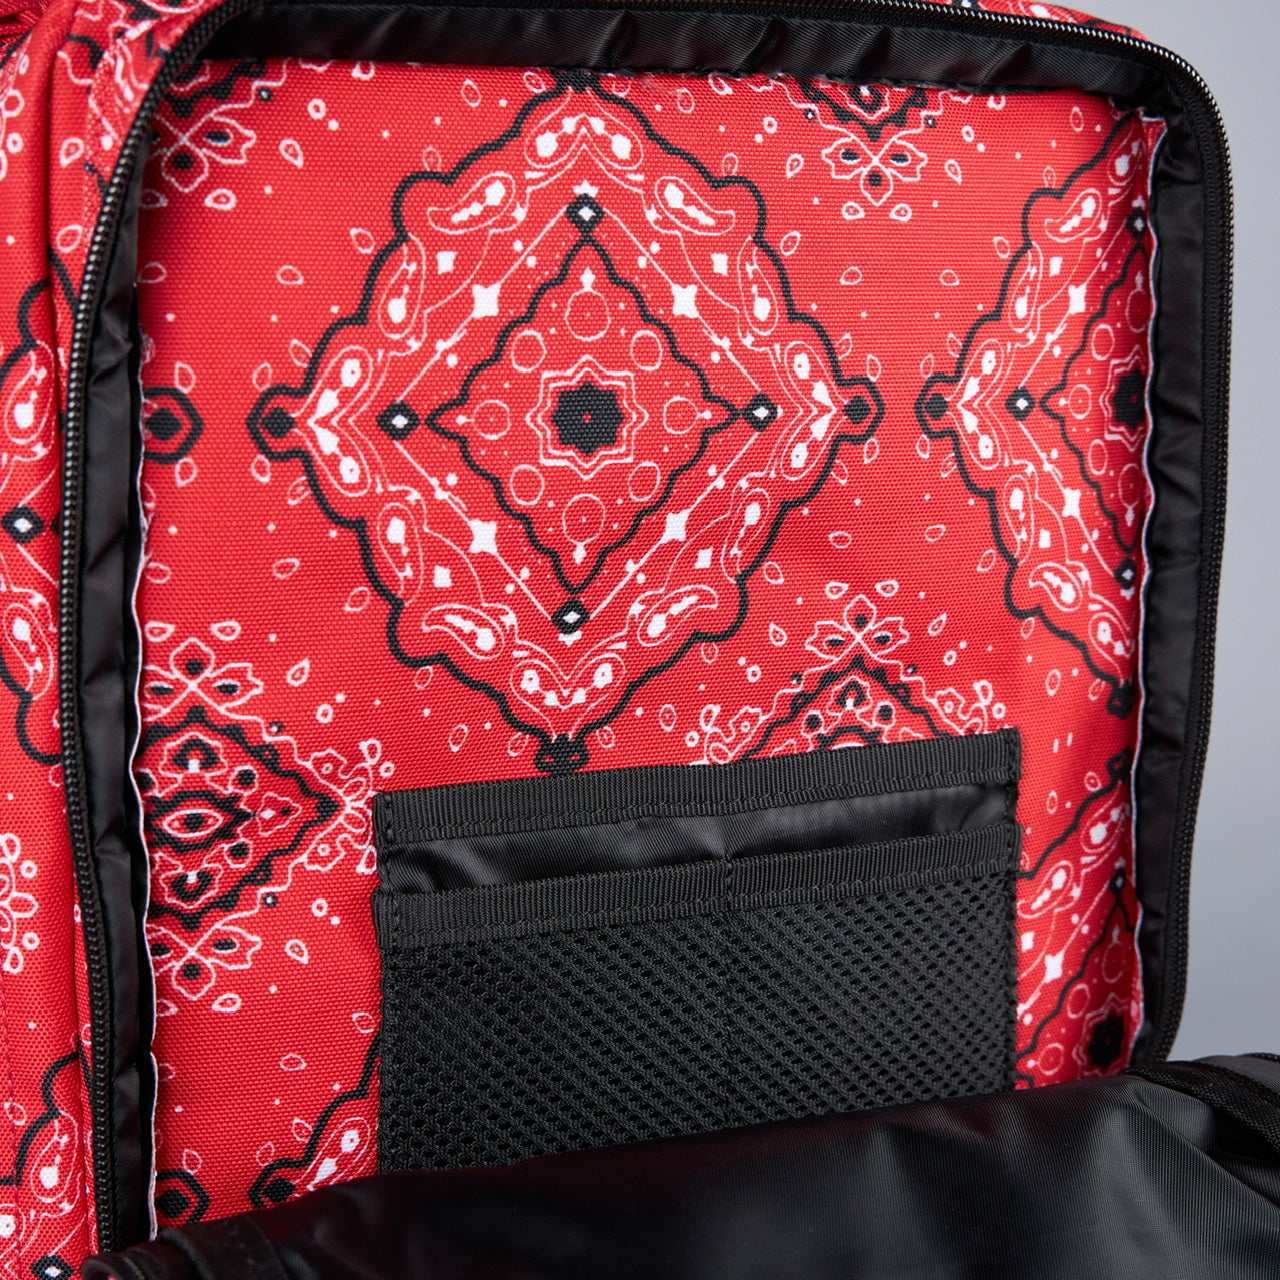 25L Backpack Red Bandana